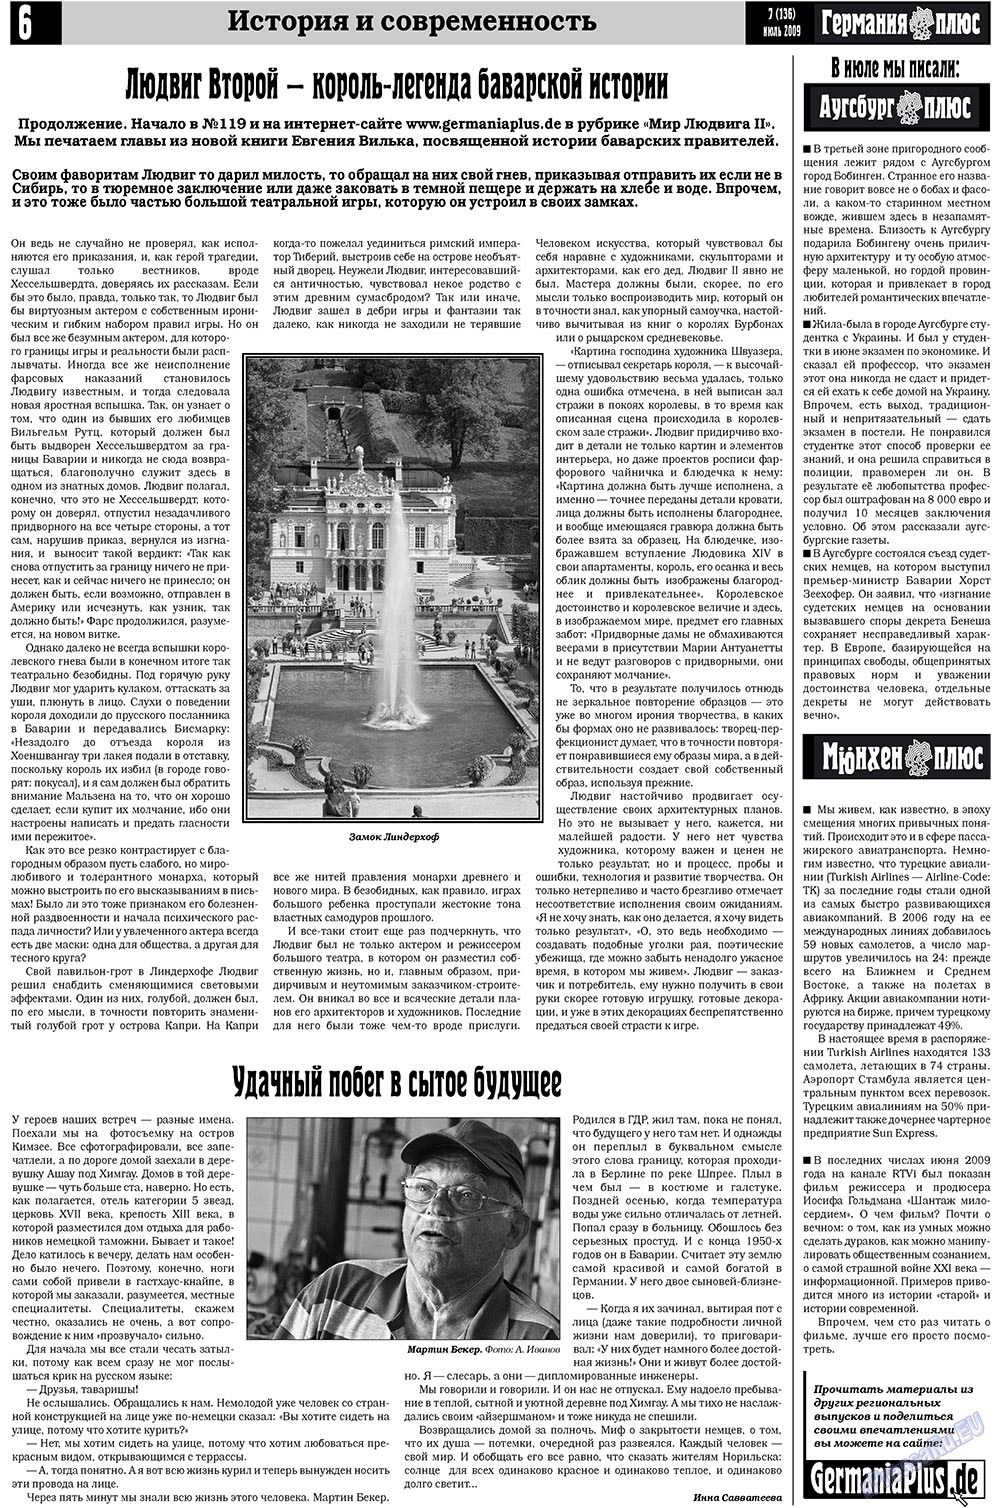 Германия плюс (газета). 2009 год, номер 7, стр. 6